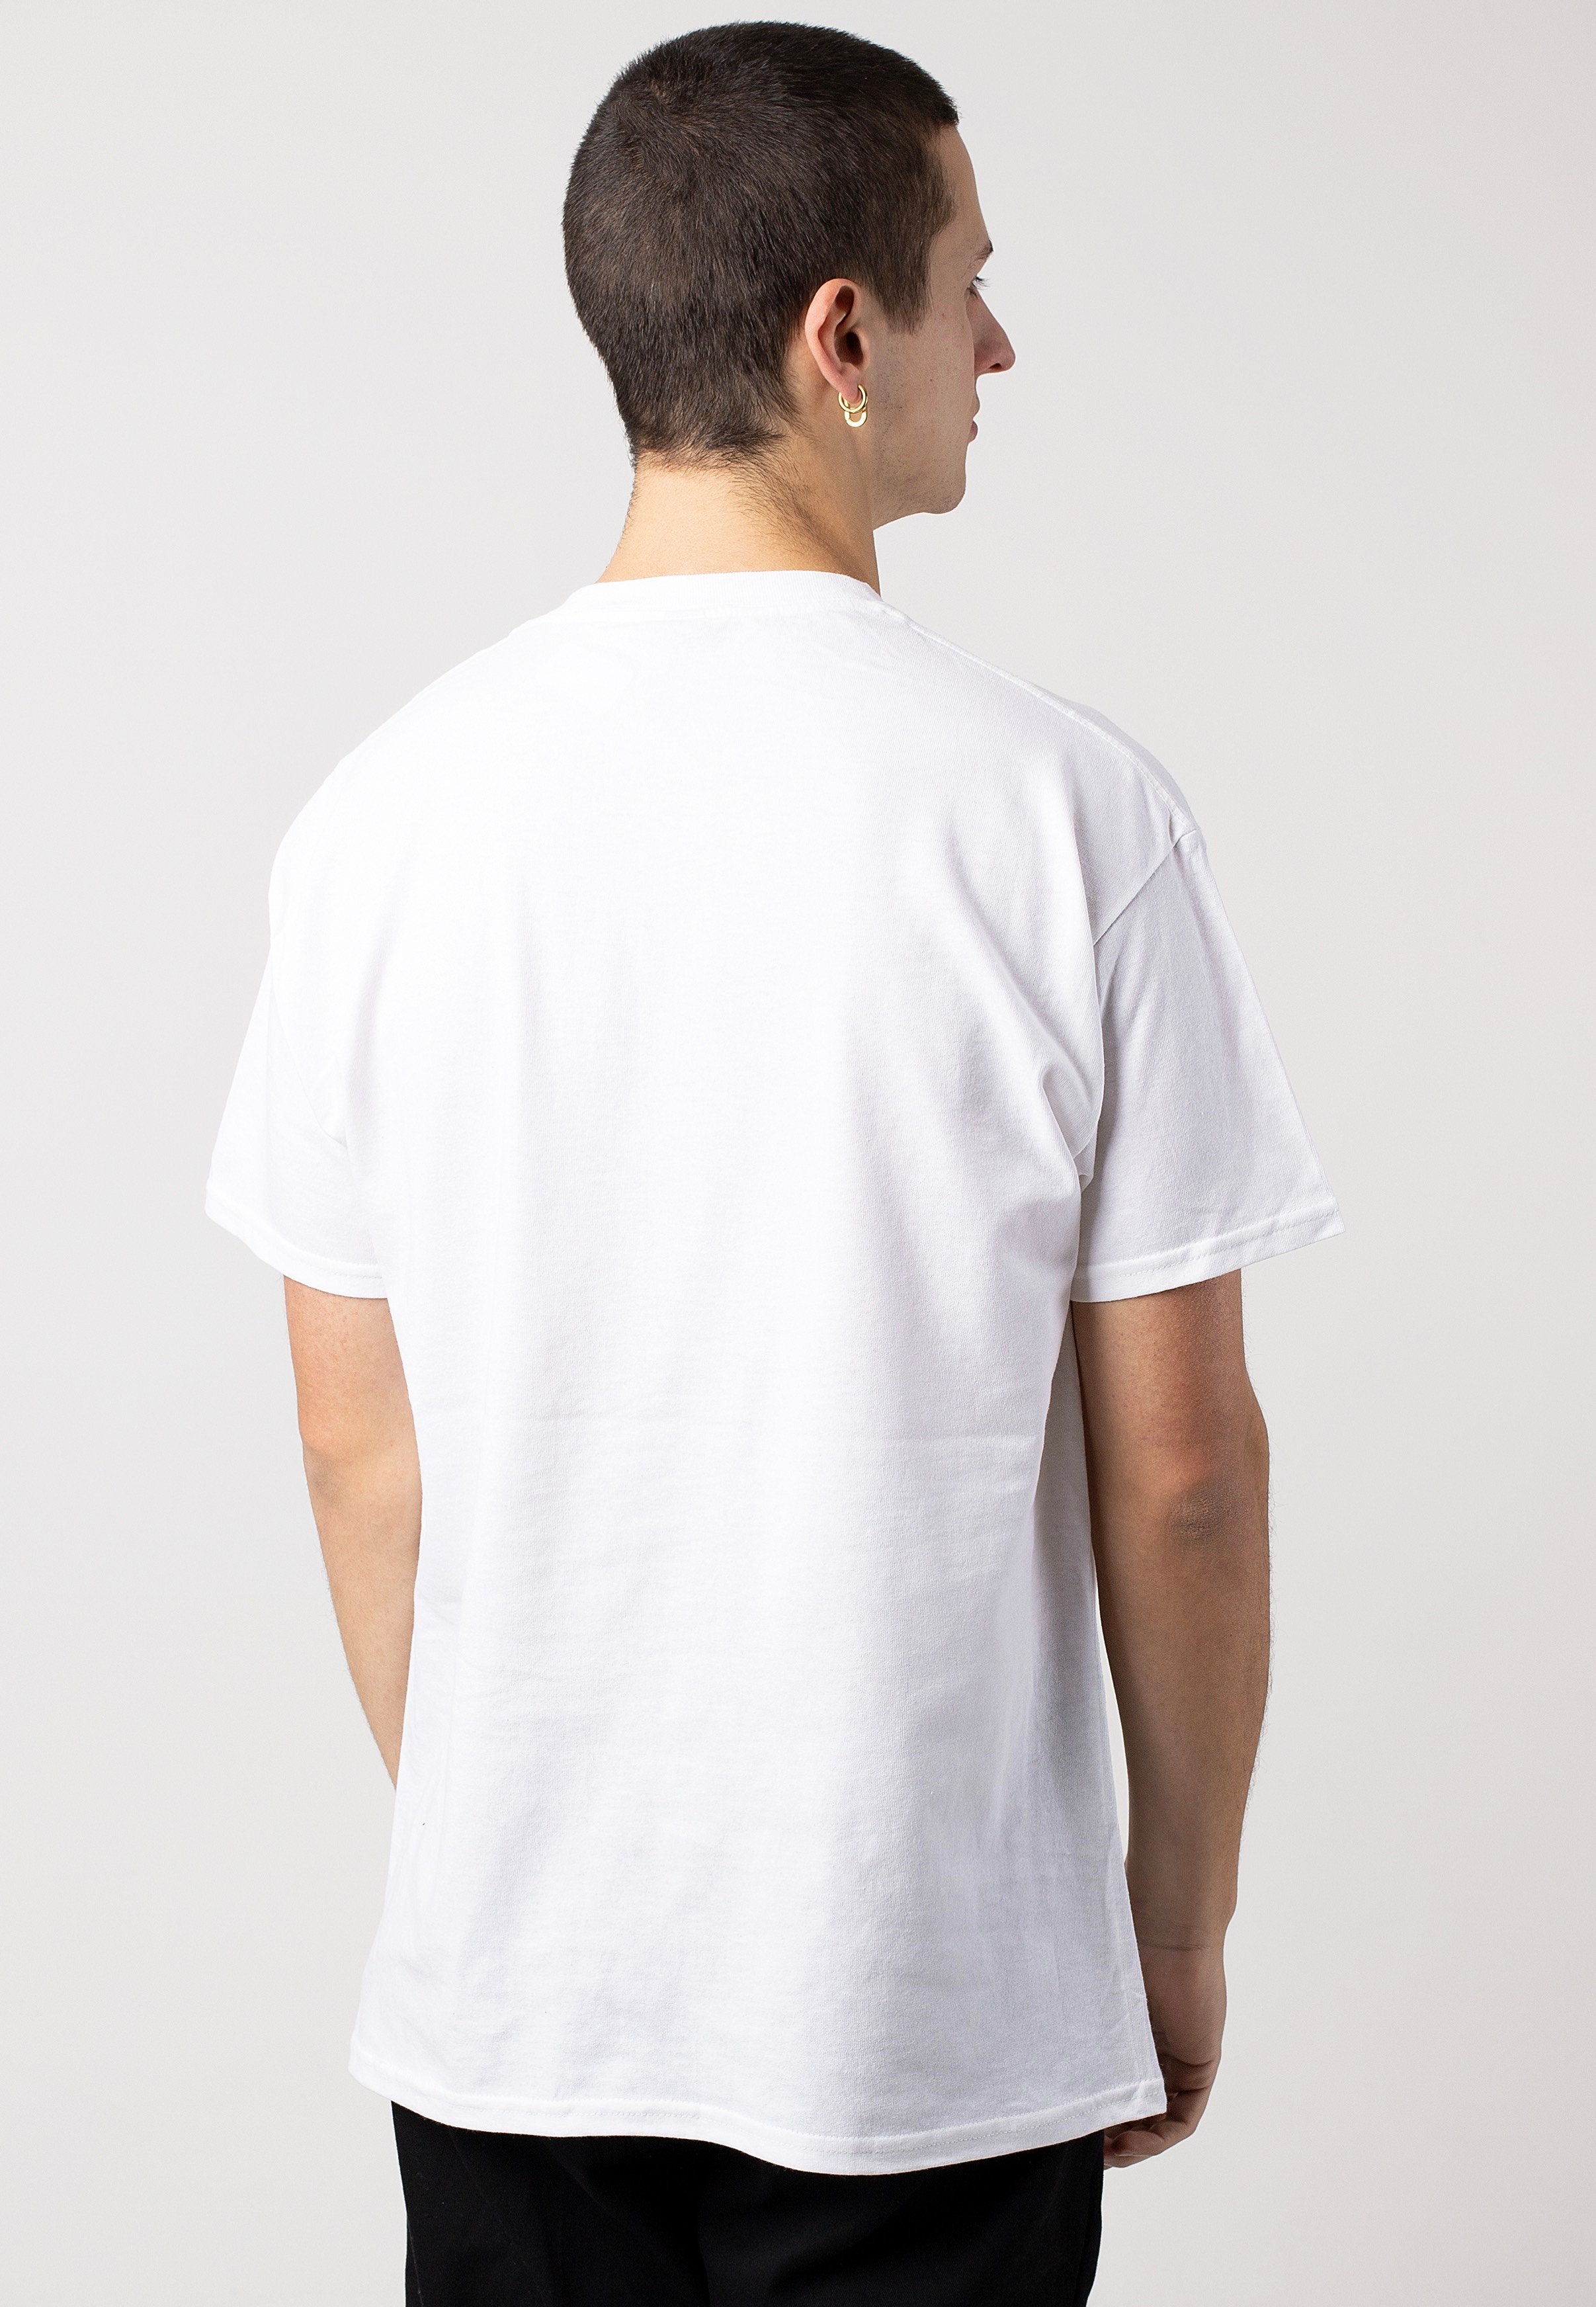 Infant Annihilator - Jesus White - T-Shirt | Men-Image